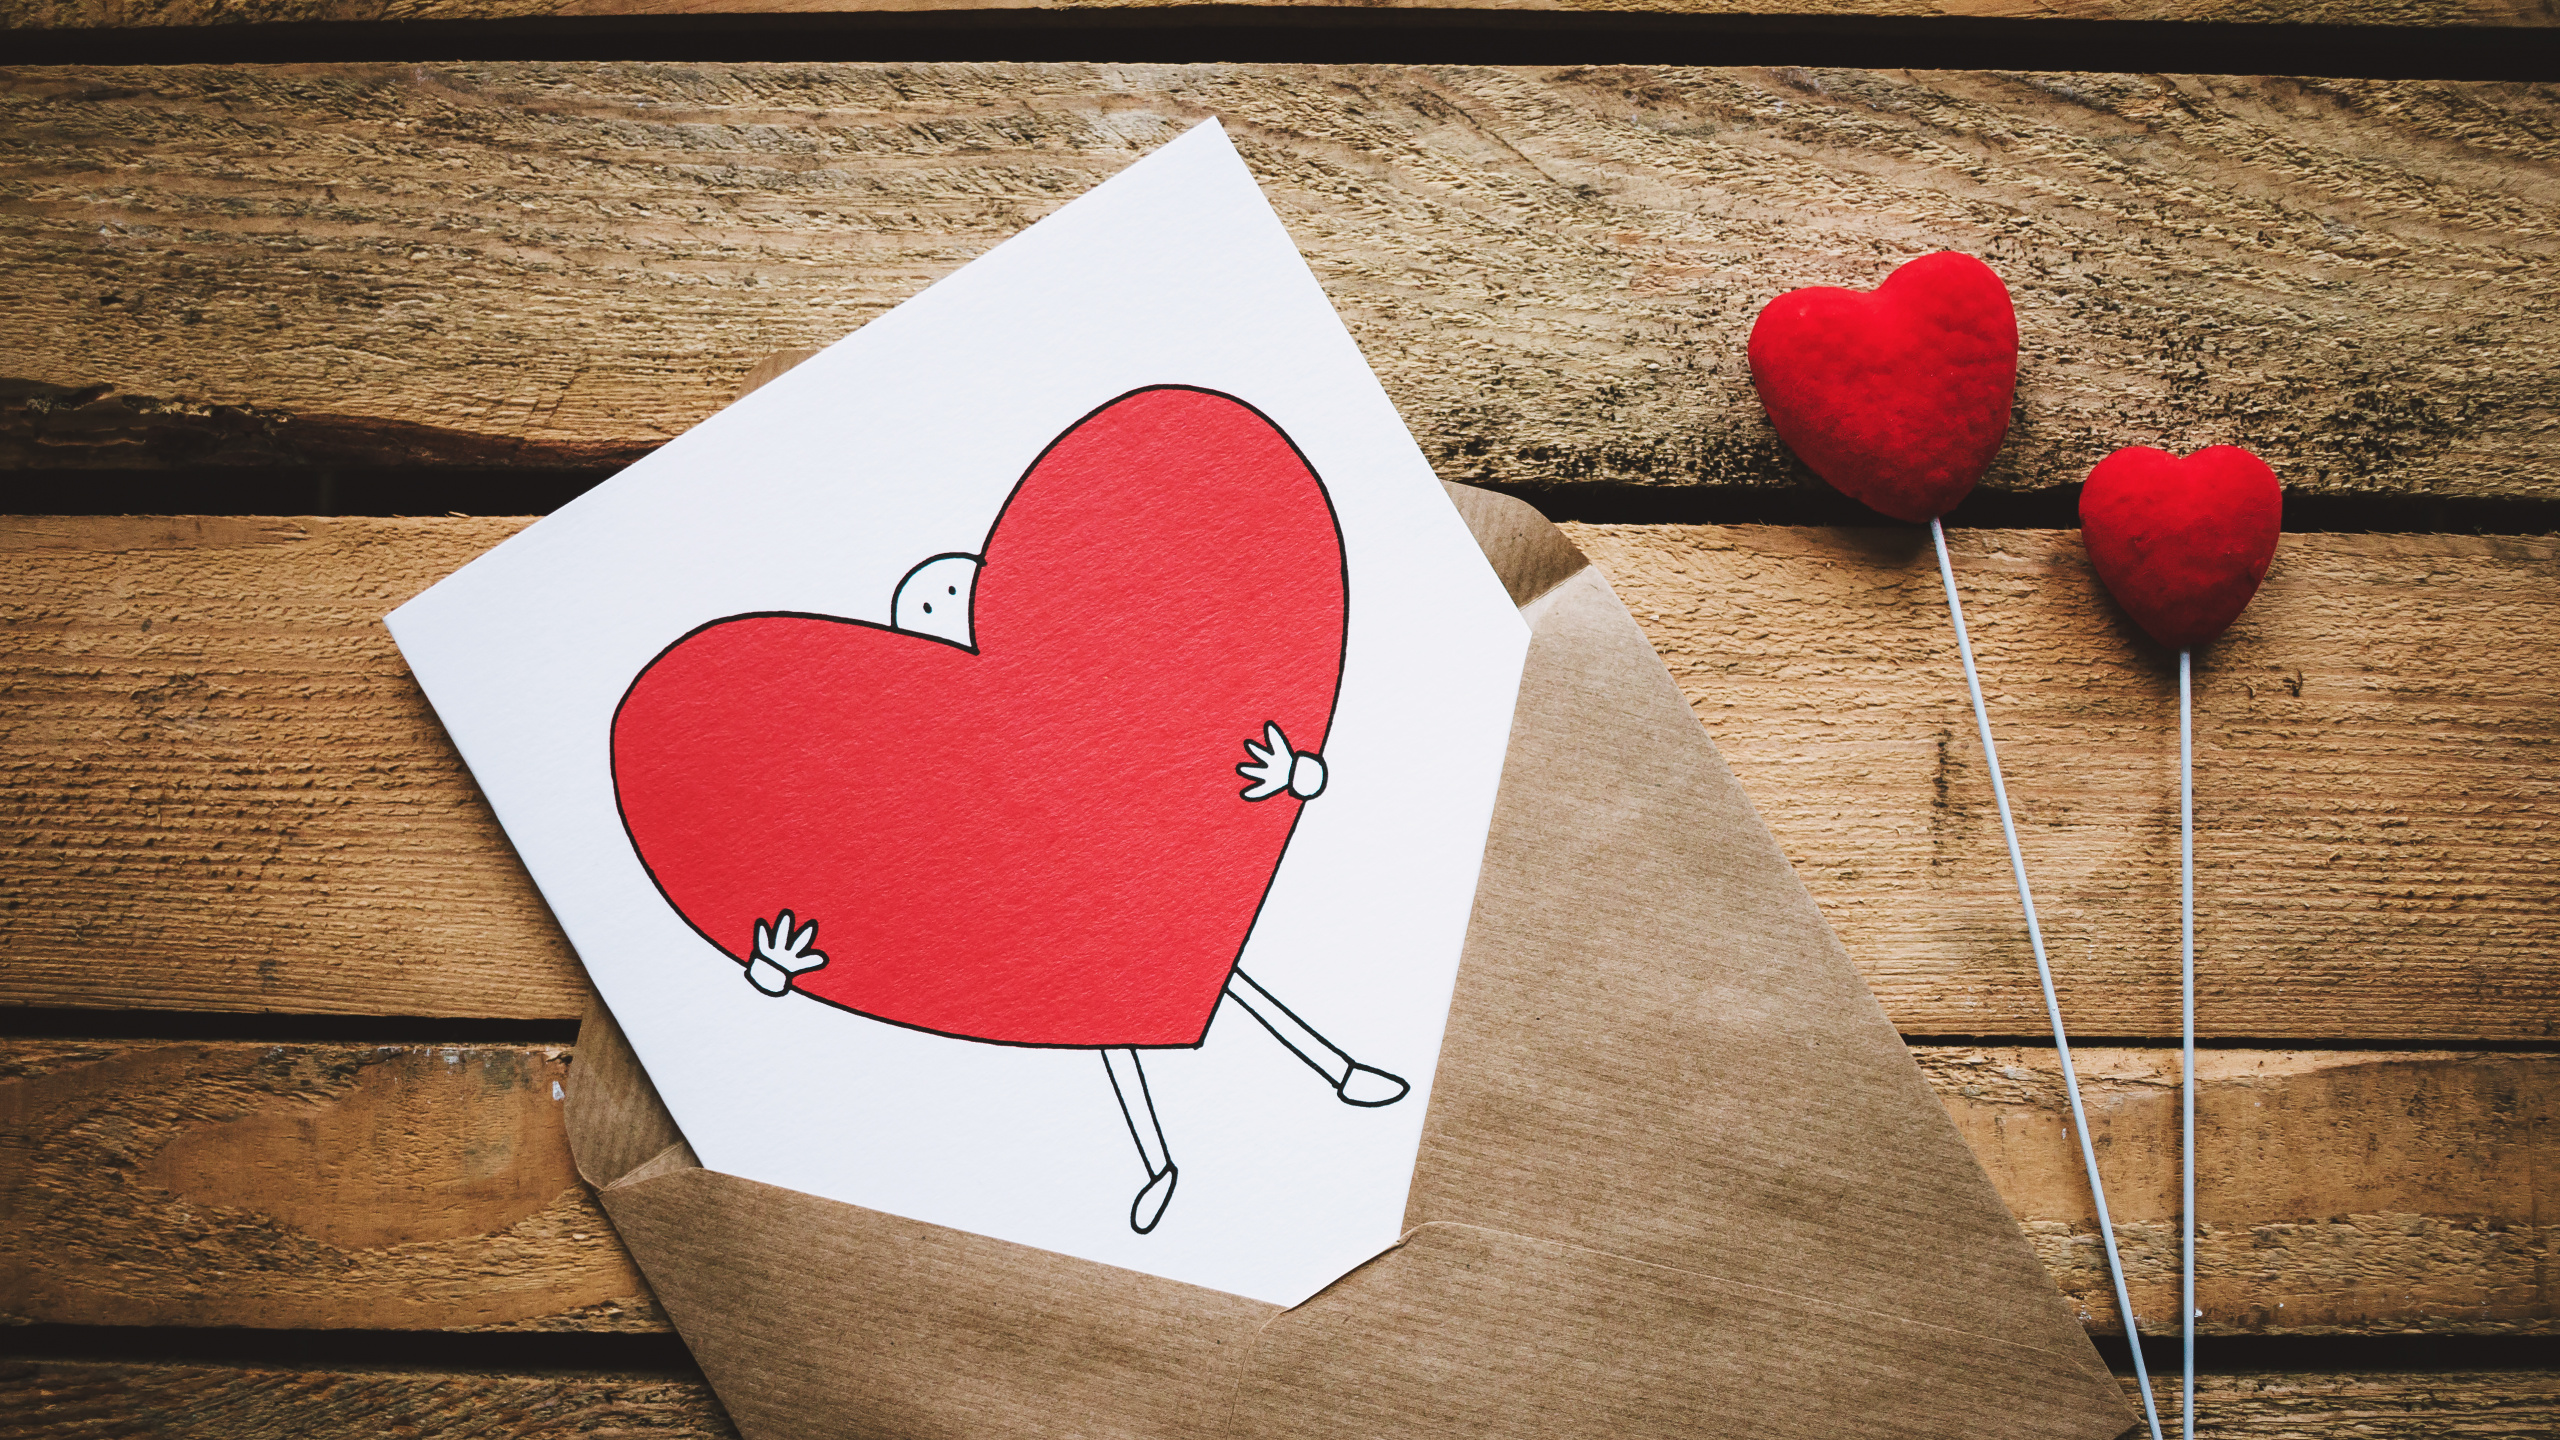 情书, 浪漫, 心脏, 红色的, 爱情 壁纸 2560x1440 允许